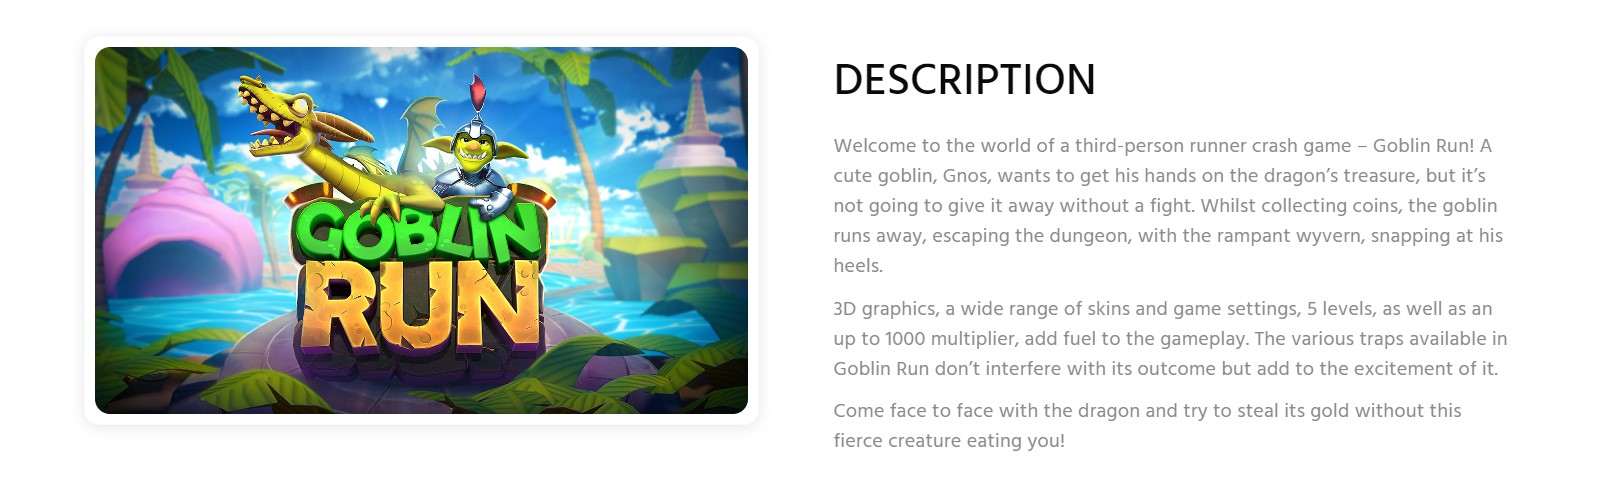 Goblin Run περιγραφή παιχνιδιού